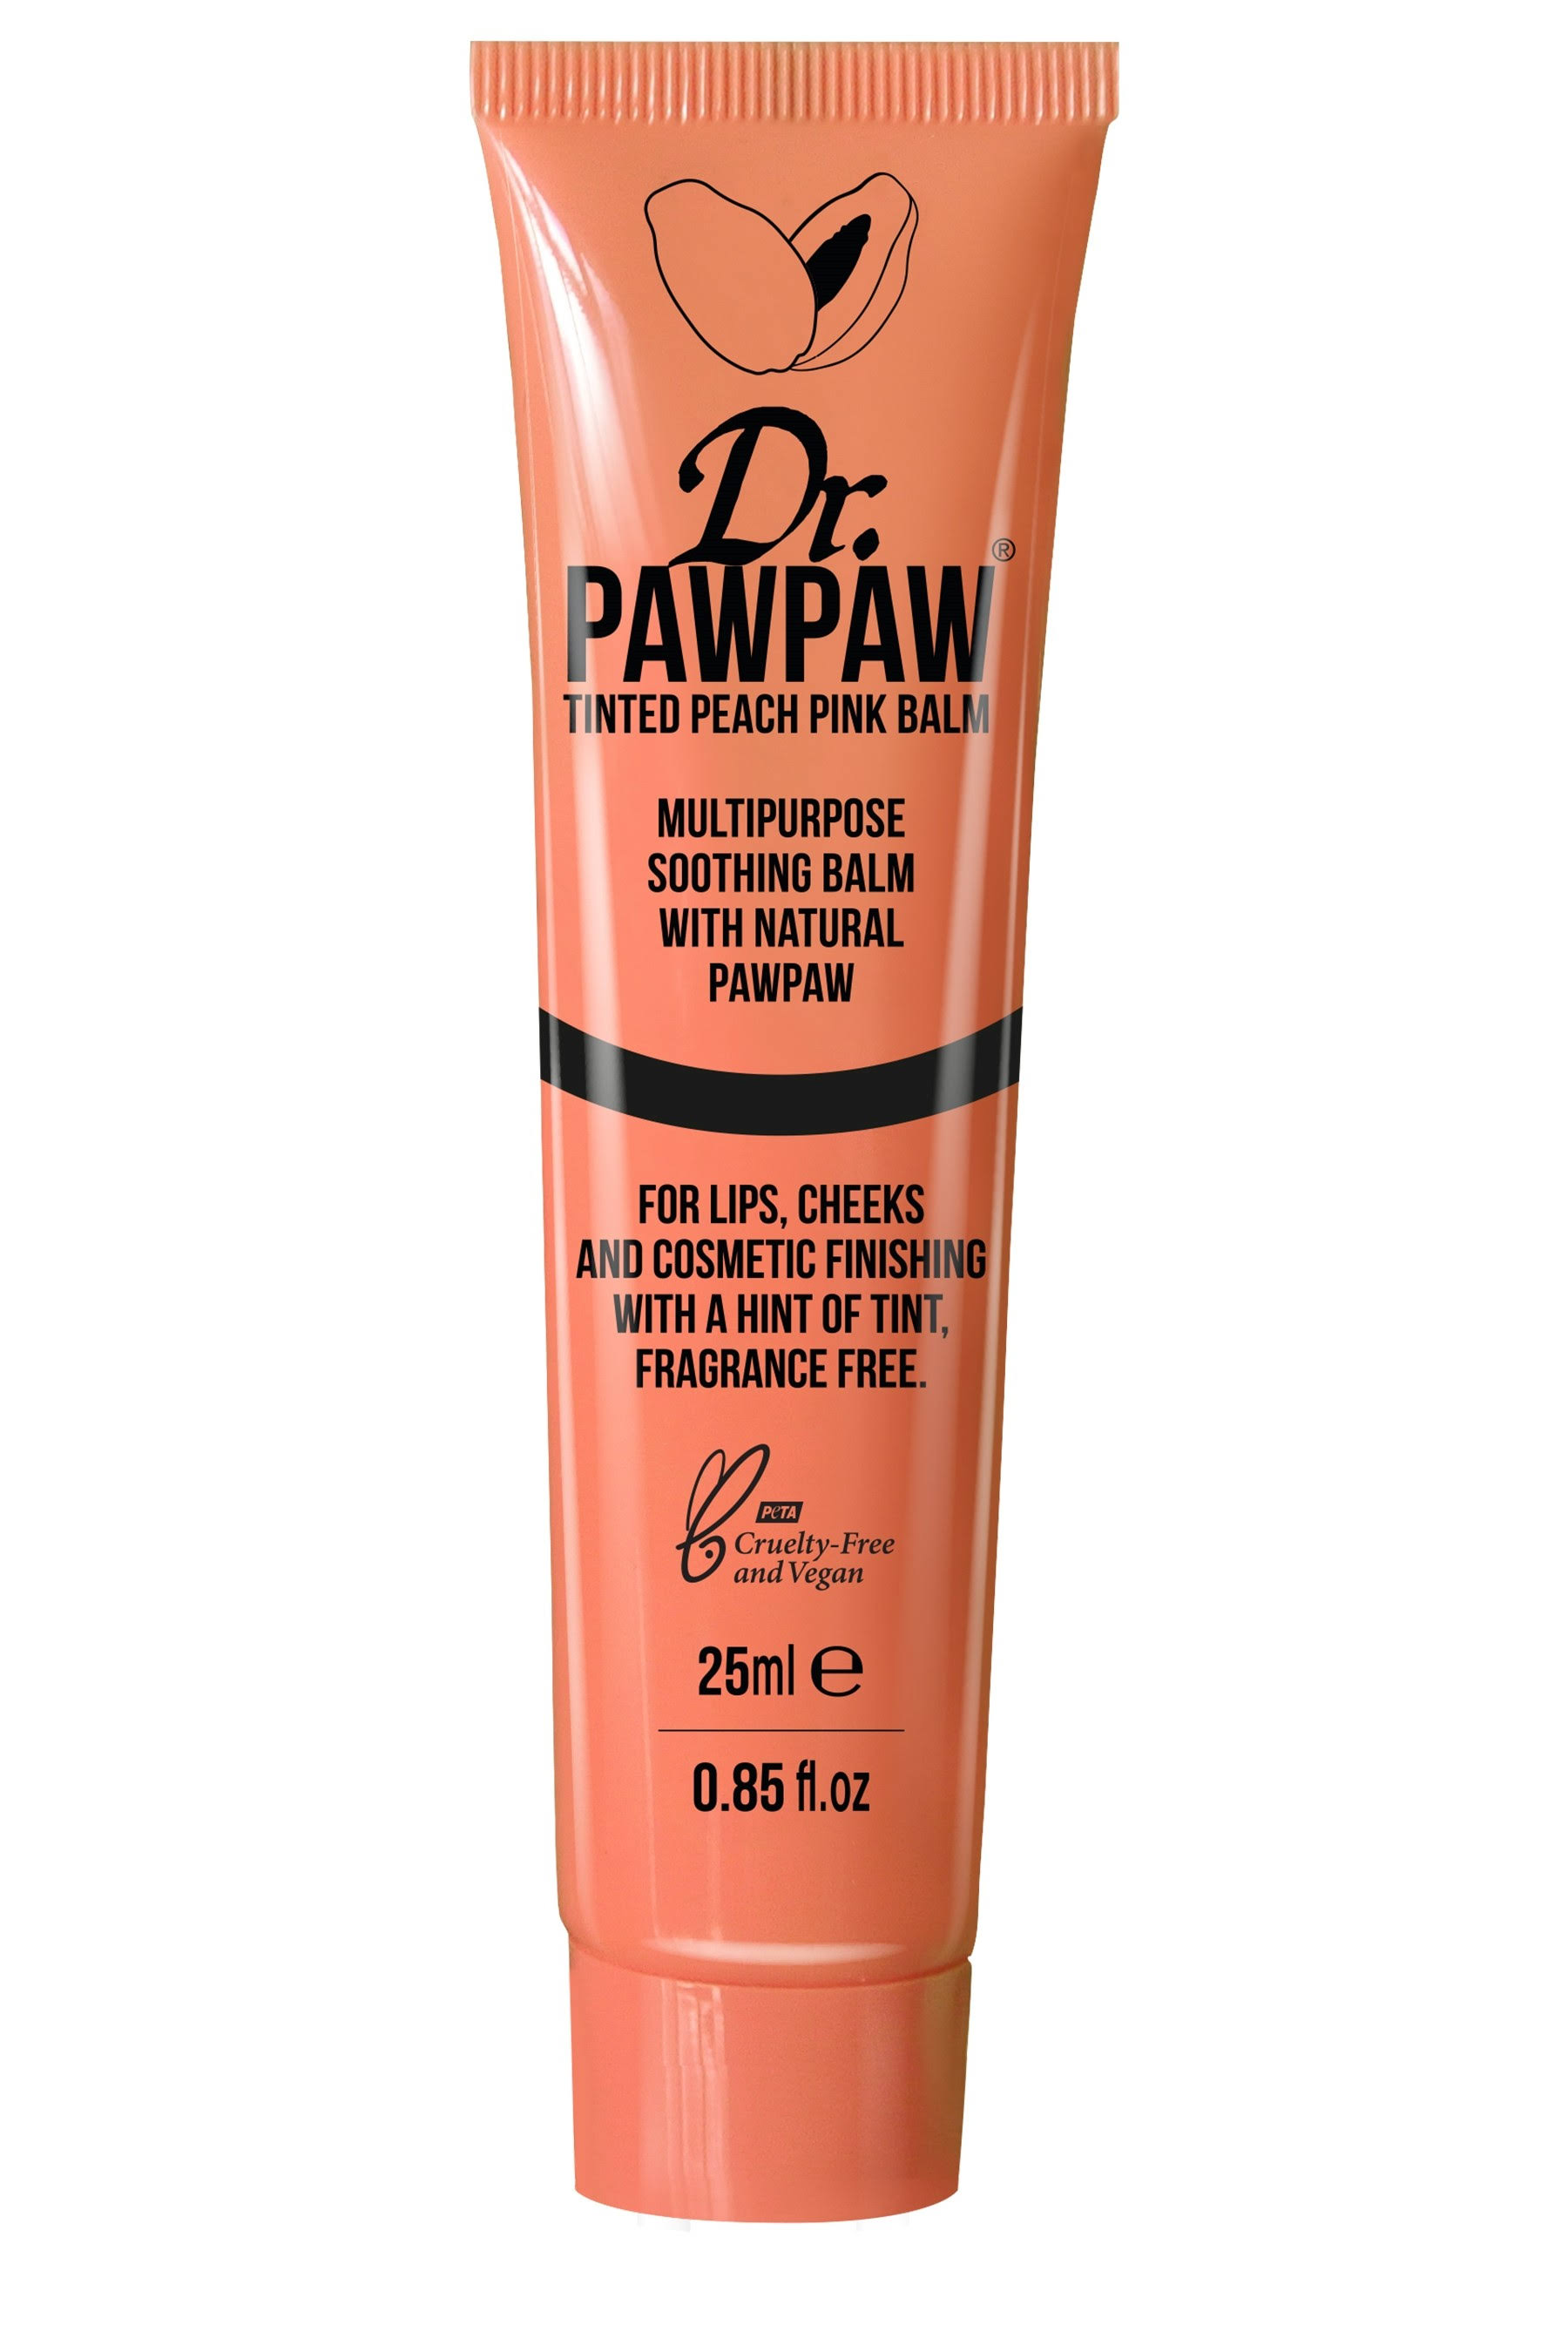 Dr PAWPAW Tinted Peach Pink Balm 25ml